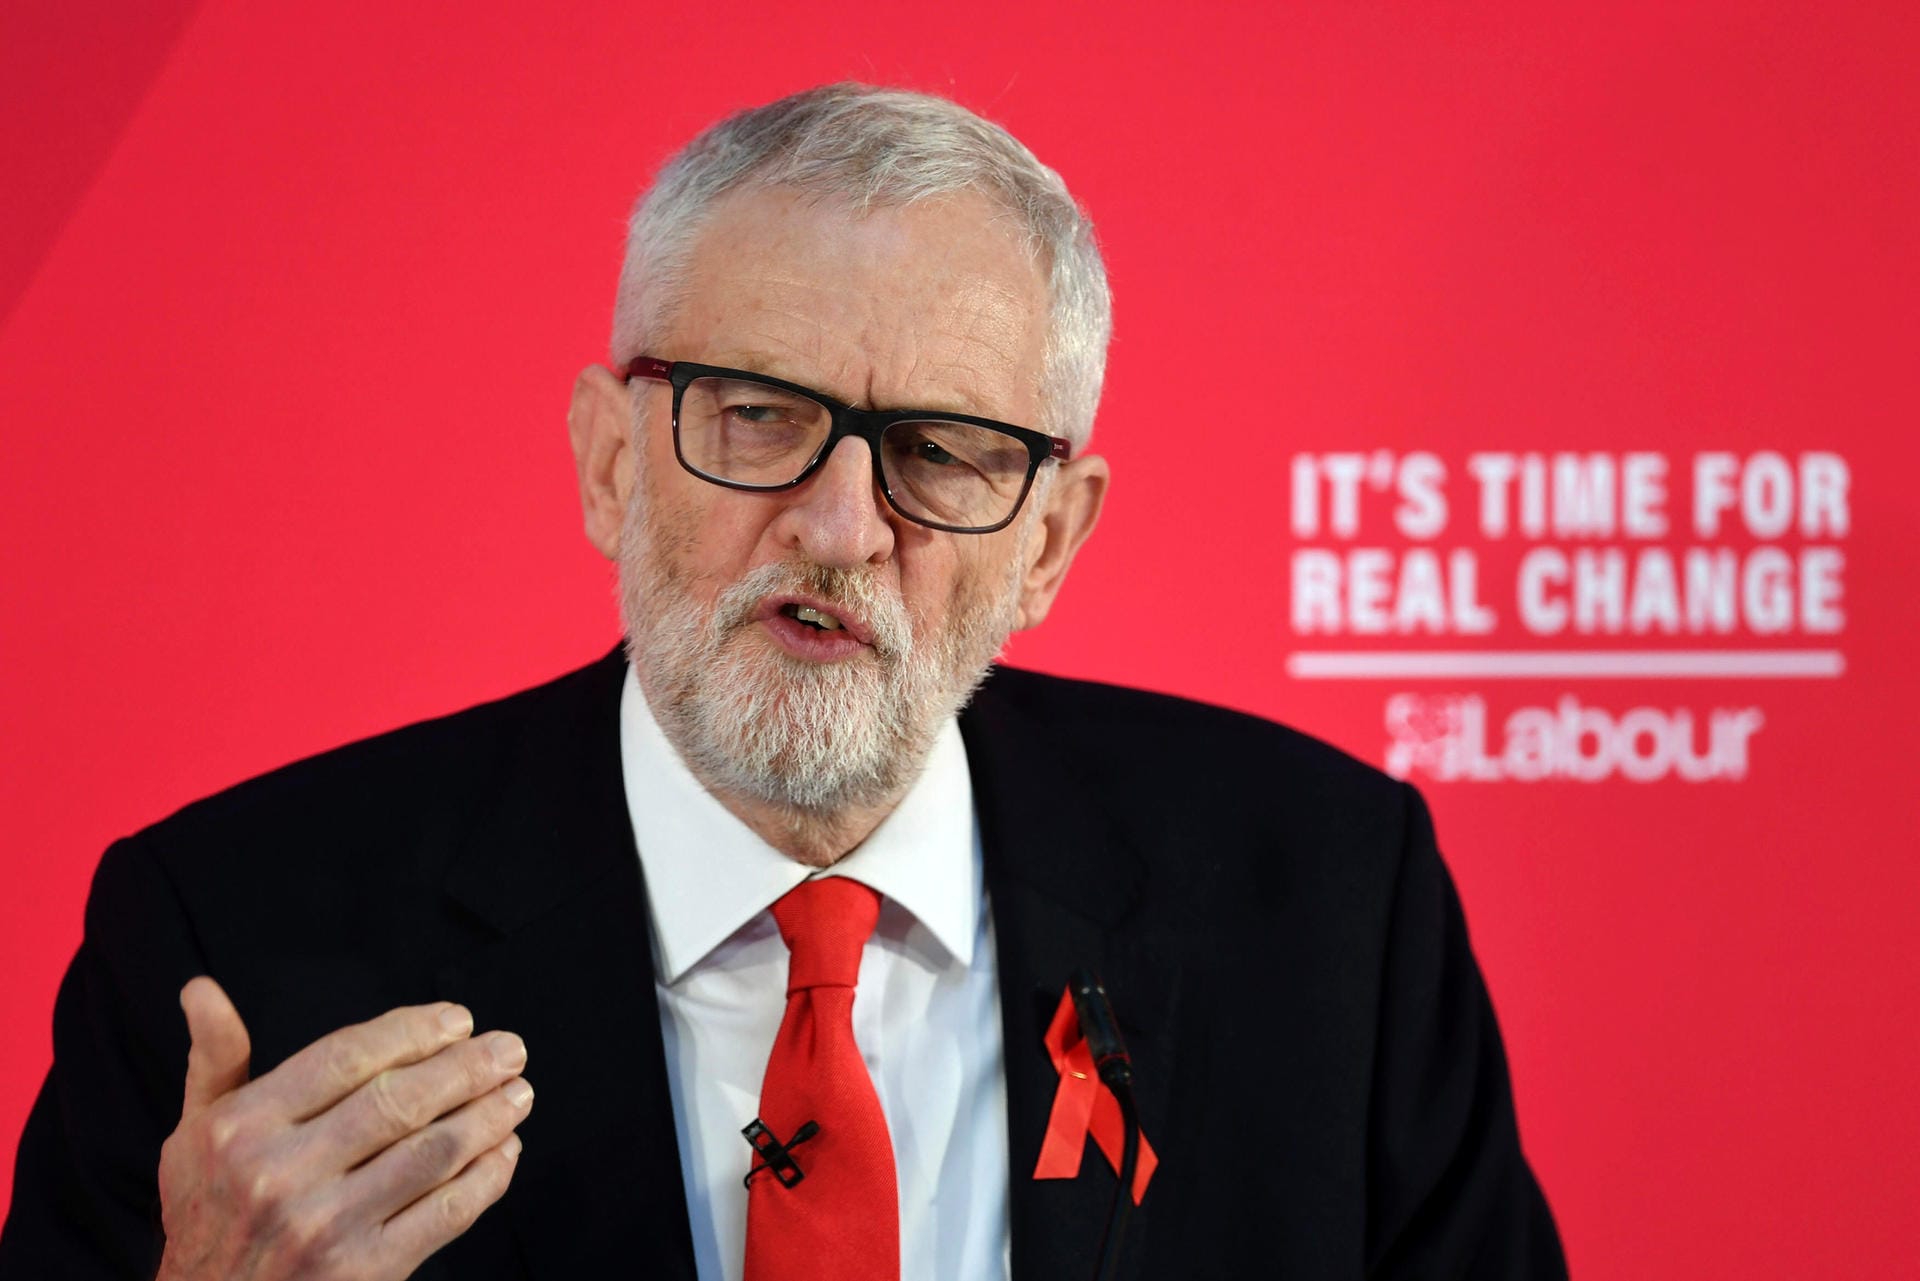 Labour-Chef Jeremy Corbyn führt die größte Oppositionspartei; seine Sozialdemokraten haben kaum Chancen auf eine eigene Mehrheit im künftigen Parlament.